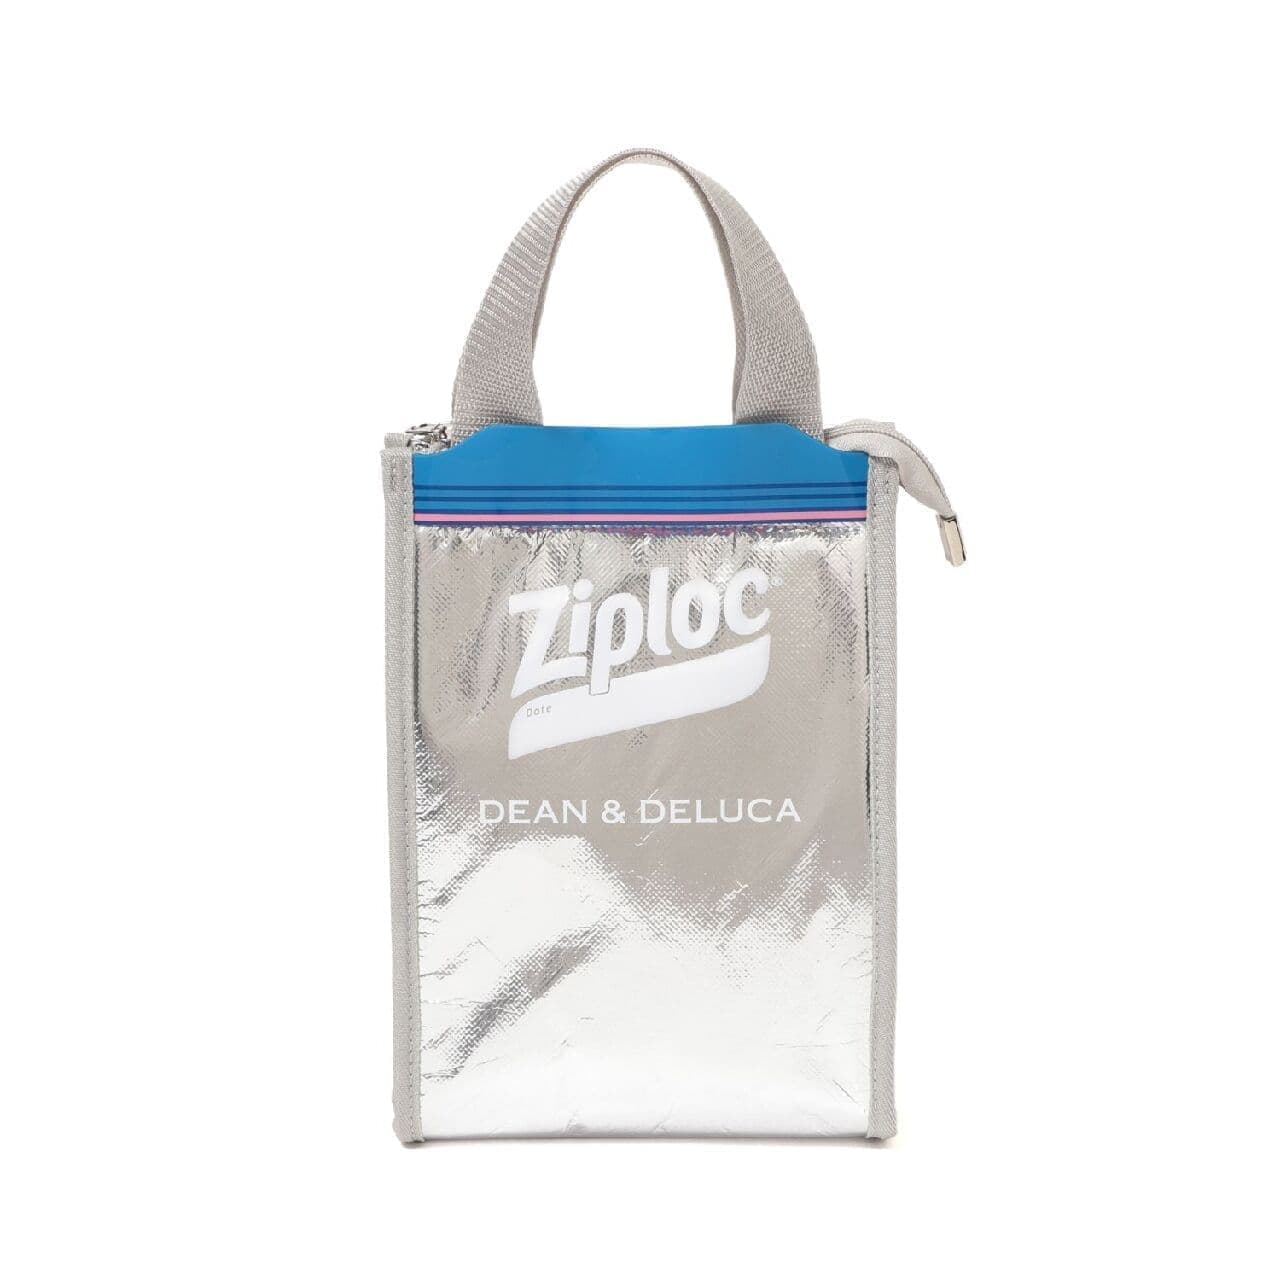 1日で完売したZiplocクーラーバッグが改良新発売 -- DEAN & DELUCA×BEAMS COUTUREのトリプルコラボ [えんウチ]